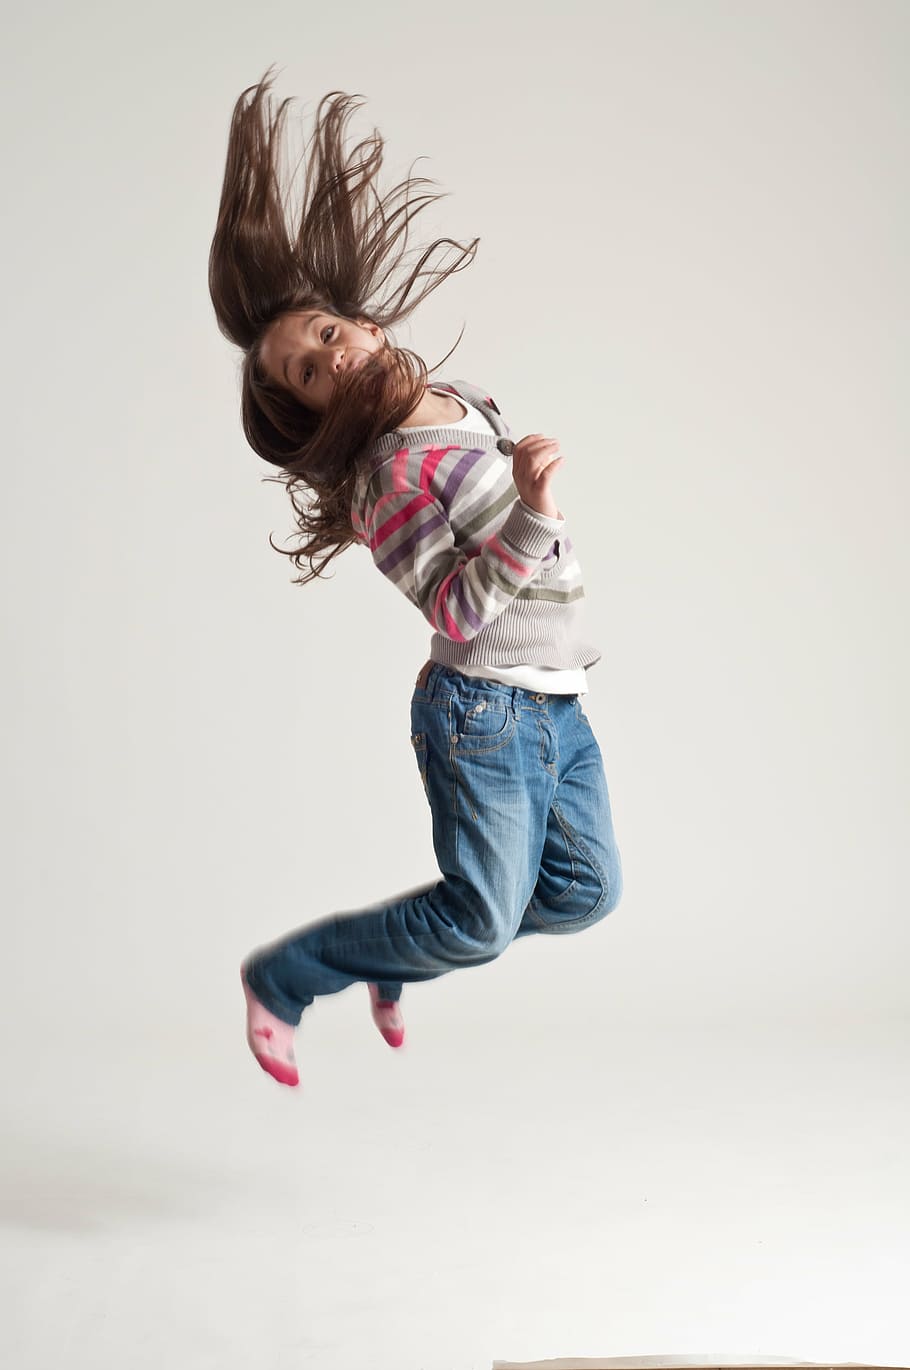 foto, saltando, niña, suéter, azul, jeans, salto, niño, diversión, activo